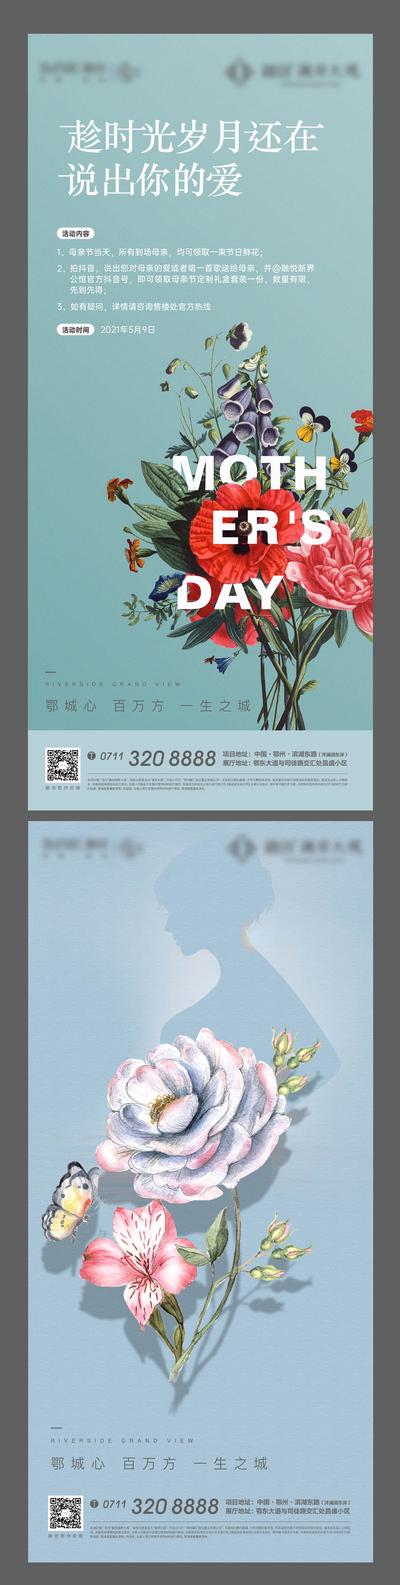 【南门网】海报 房地产 公历节日 母亲节 插花 花卉 DIY 活动